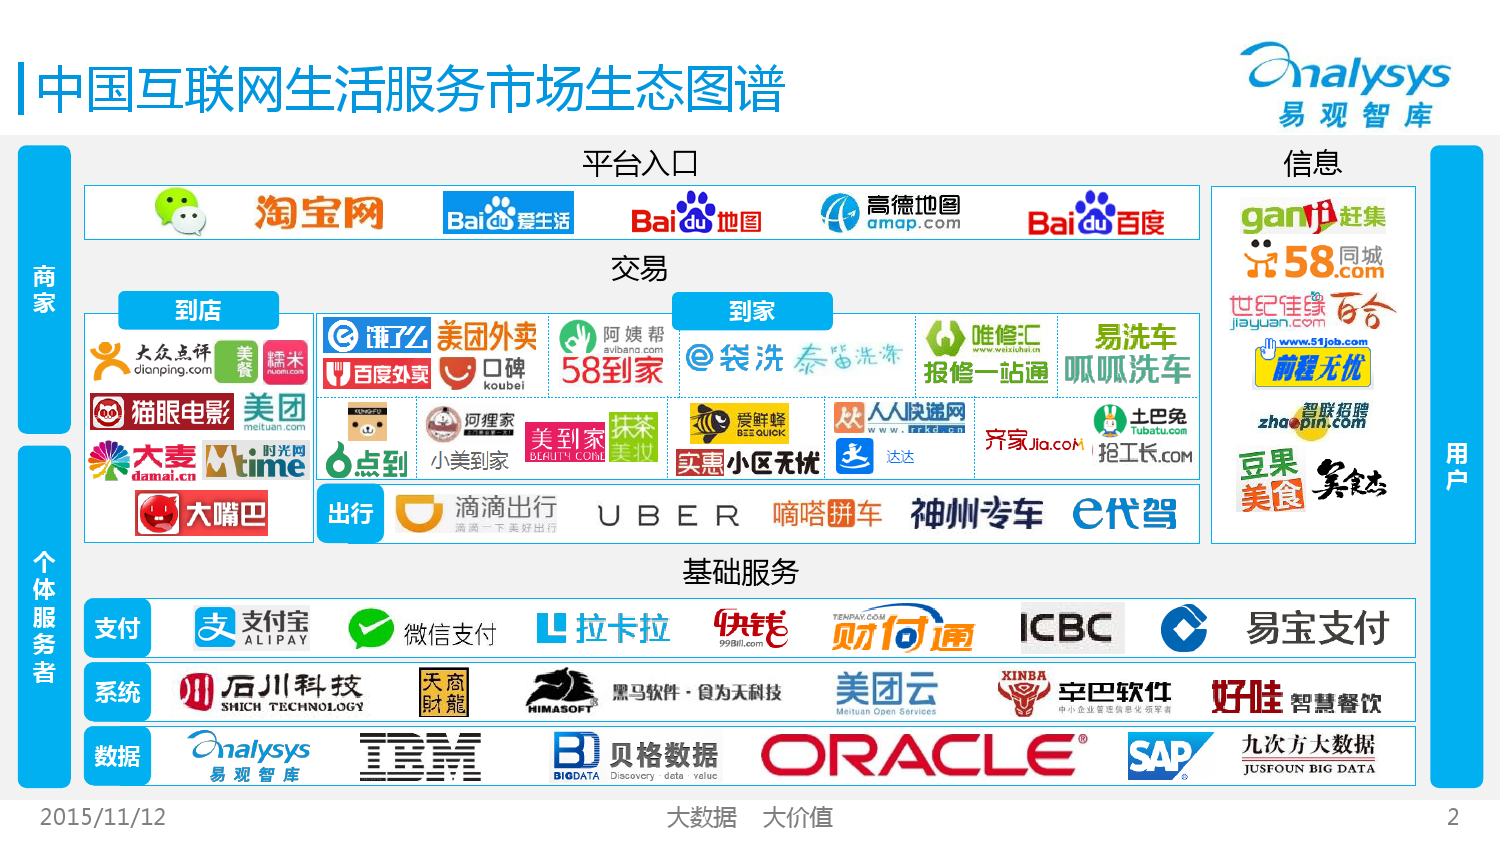 中国互联网生活服务市场生态图谱2015 01_000002